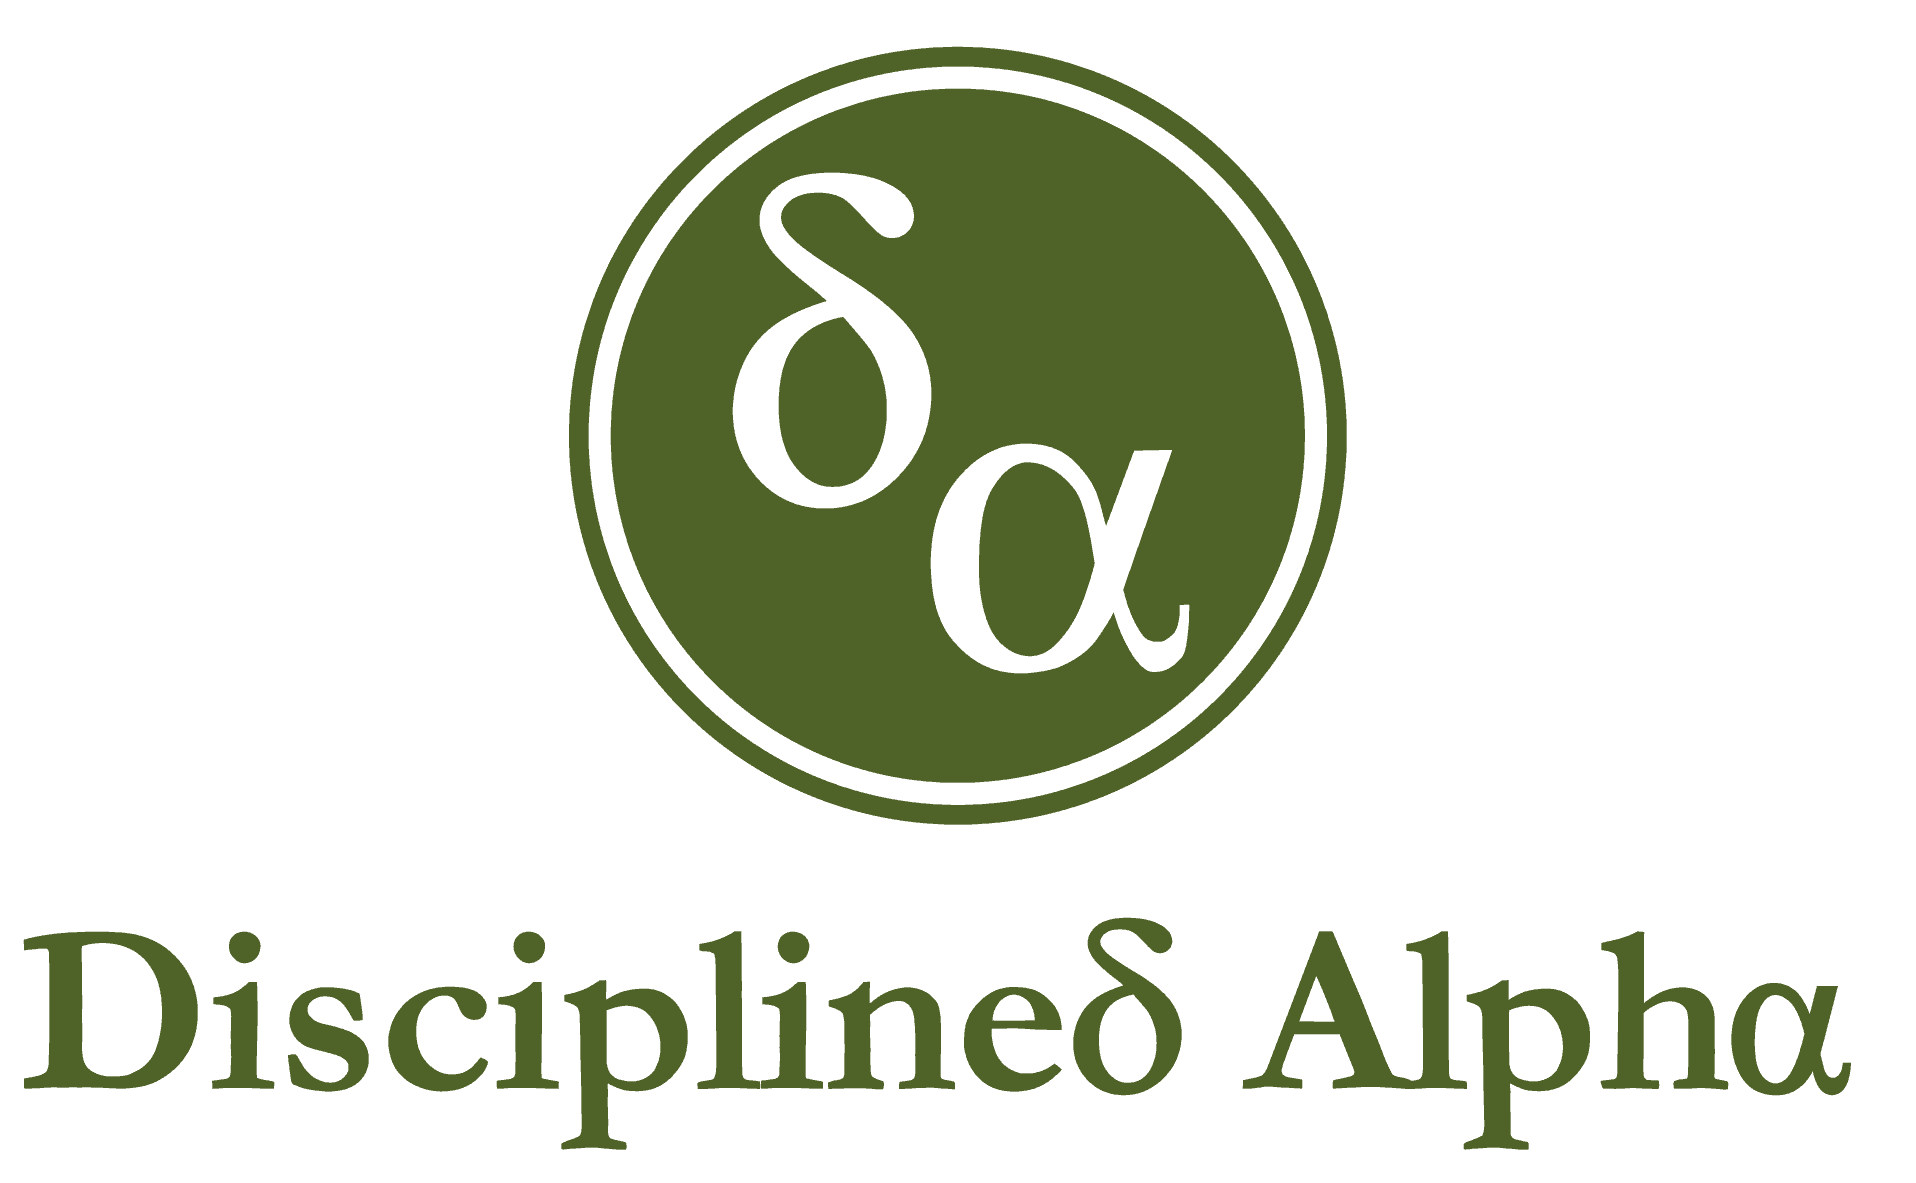 Disciplined Alpha LLC